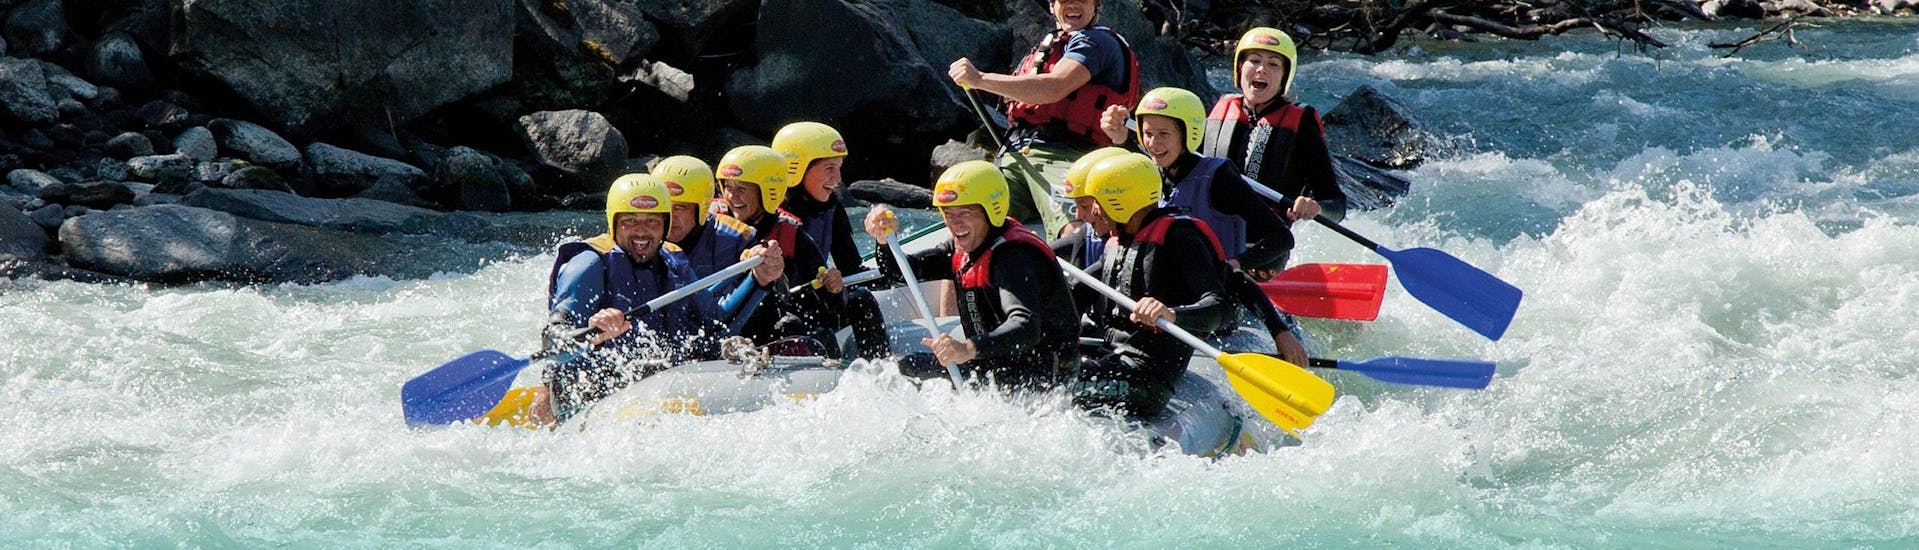 Personen in einem rafting Boot beim Rafting auf der Isel - Sport-Tour Plus mit Adventurepark Osttirol.